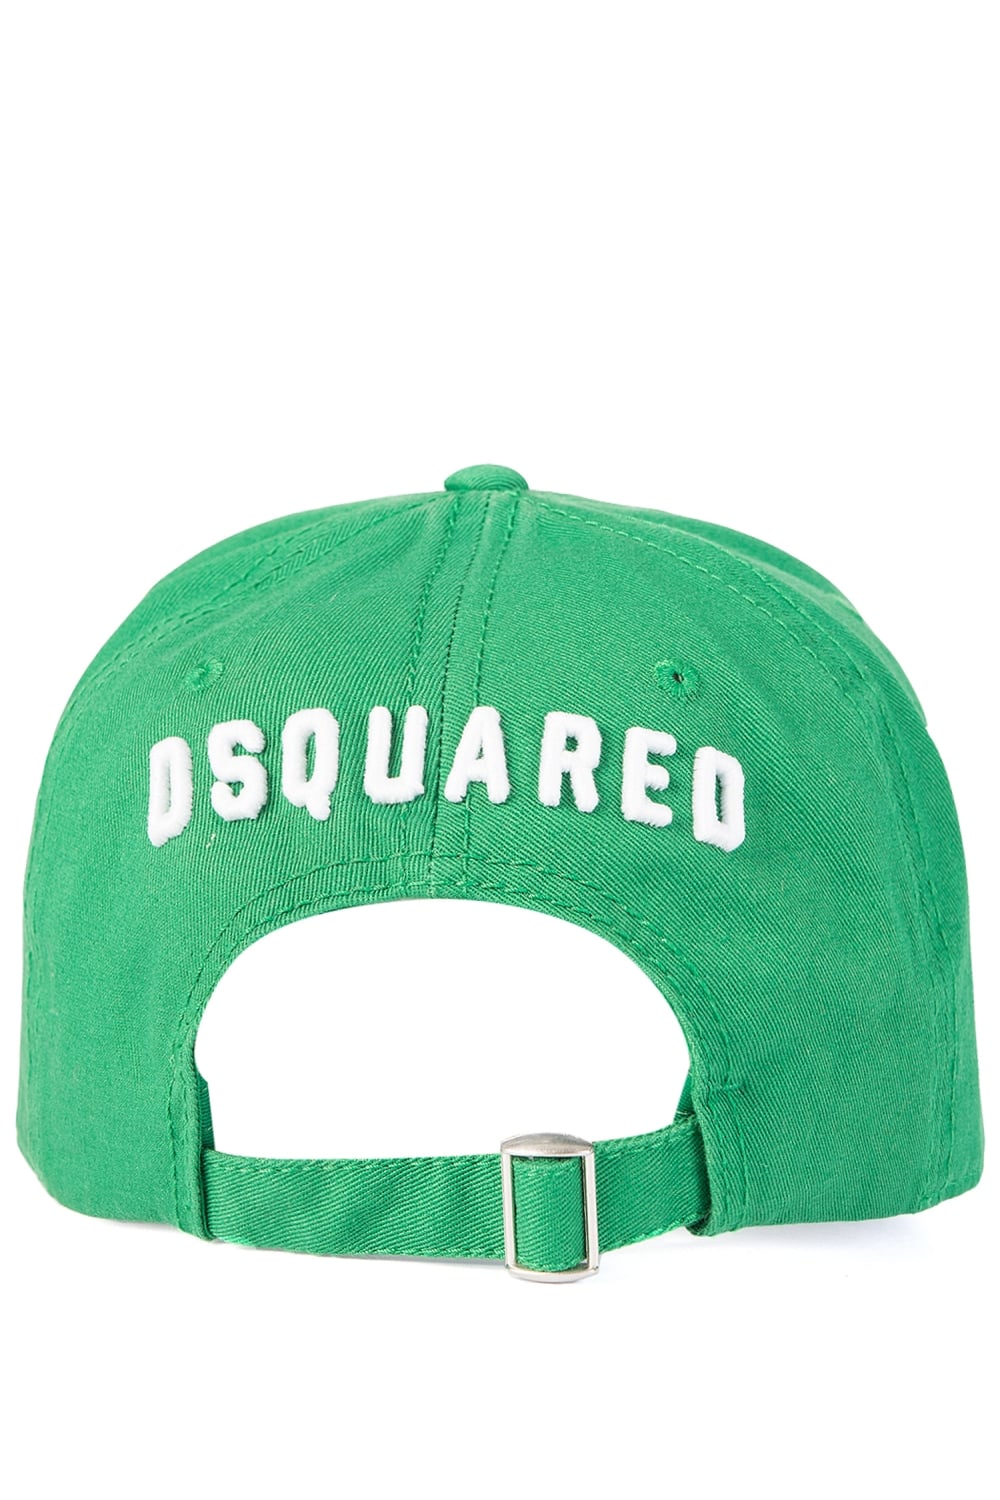 Dsquared2 BCM4001 ICON Baseball Cap - M1447 Green - Escape Menswear